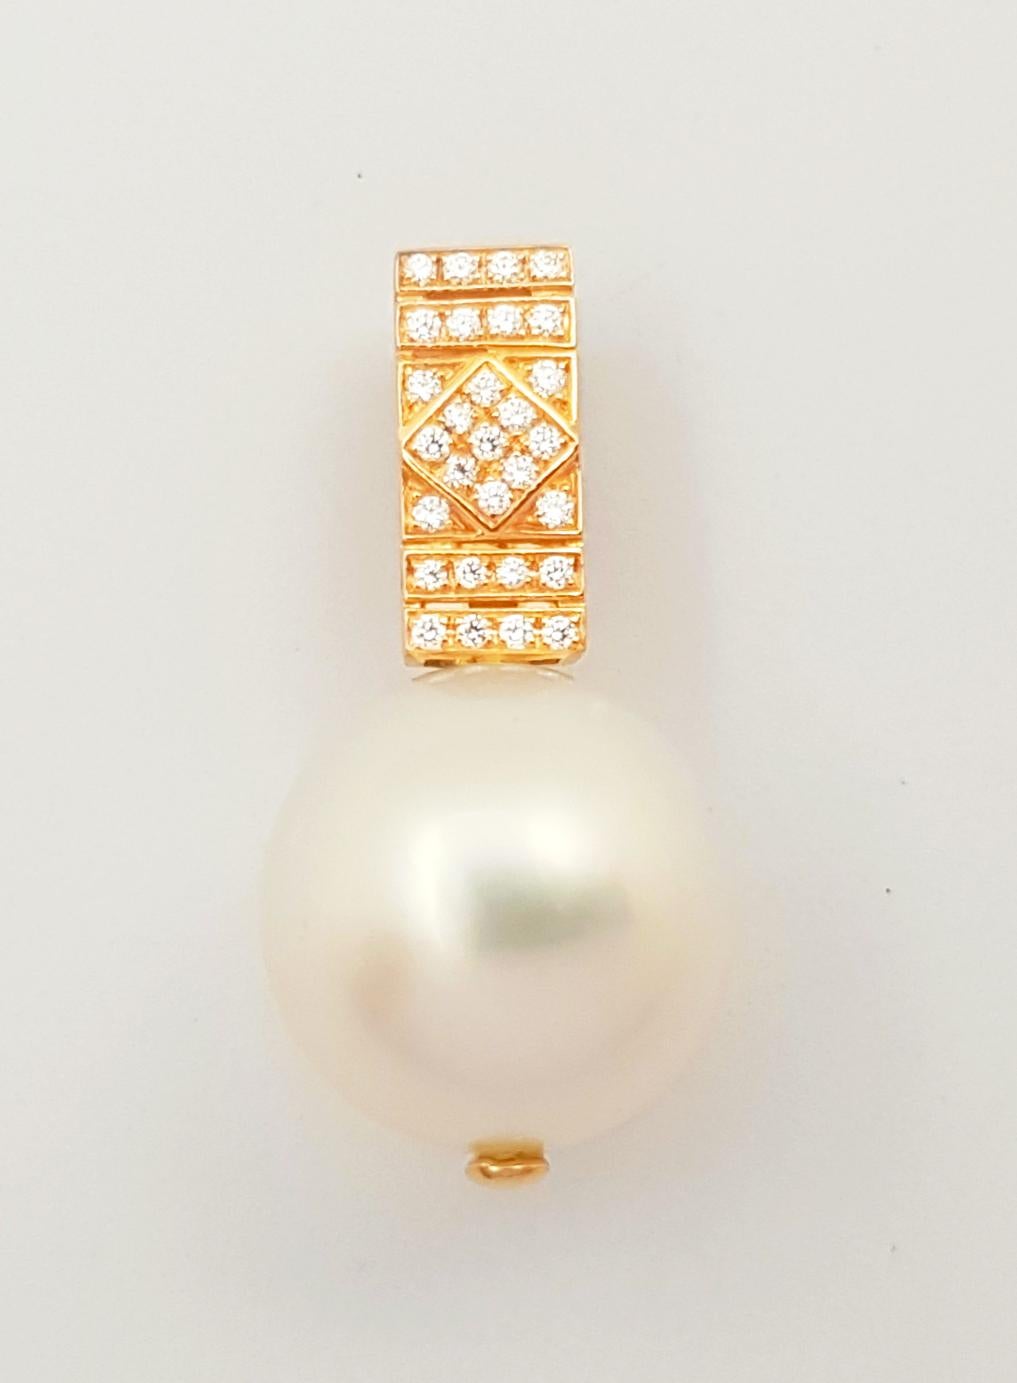 Pendentif en or rose 18 carats avec perle des mers du Sud et diamant de 0,08 carat
(chaîne non incluse)

Largeur : 1.2 cm 
Longueur : 2.4 cm
Poids total : 3,54 grammes

Perle de mer du Sud Approximativement : 12 mm

